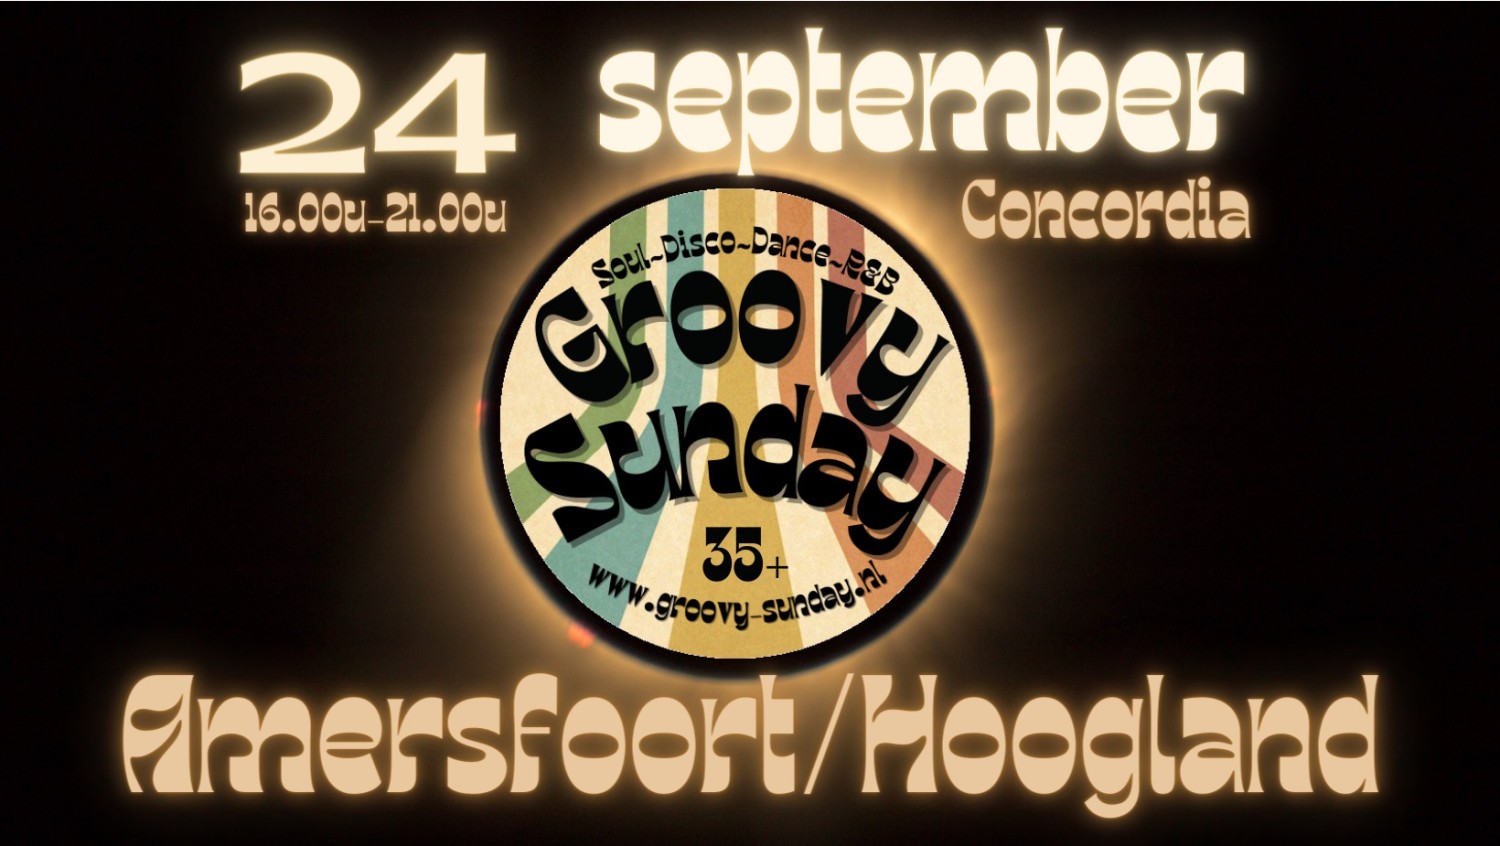 Groovy-Sunday Amersfoort